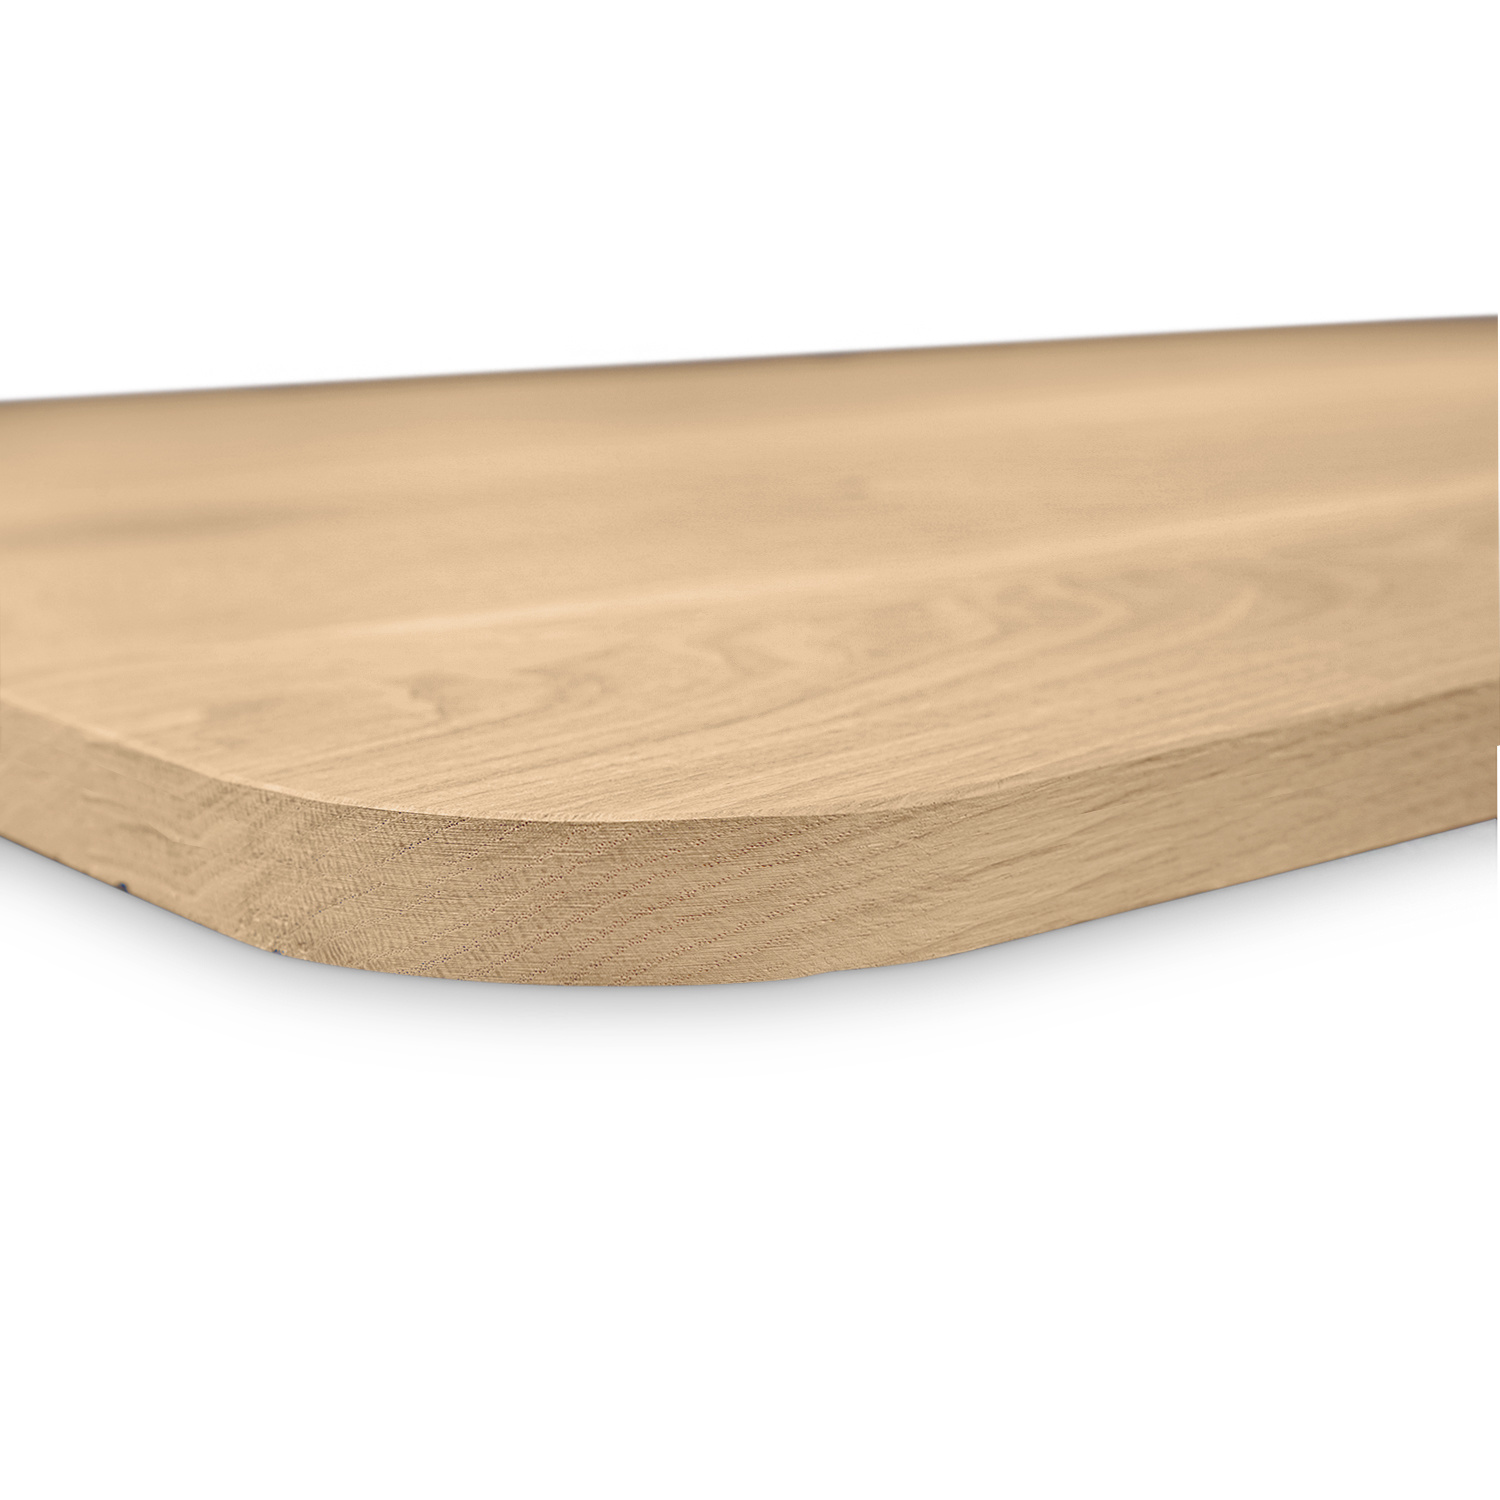  Eiken tafelblad met ronde hoeken - 3 cm dik (1-laag) - Diverse afmetingen - rustiek Europees eikenhout - met brede lamellen (circa 14-20 cm) - verlijmd kd 8-12%